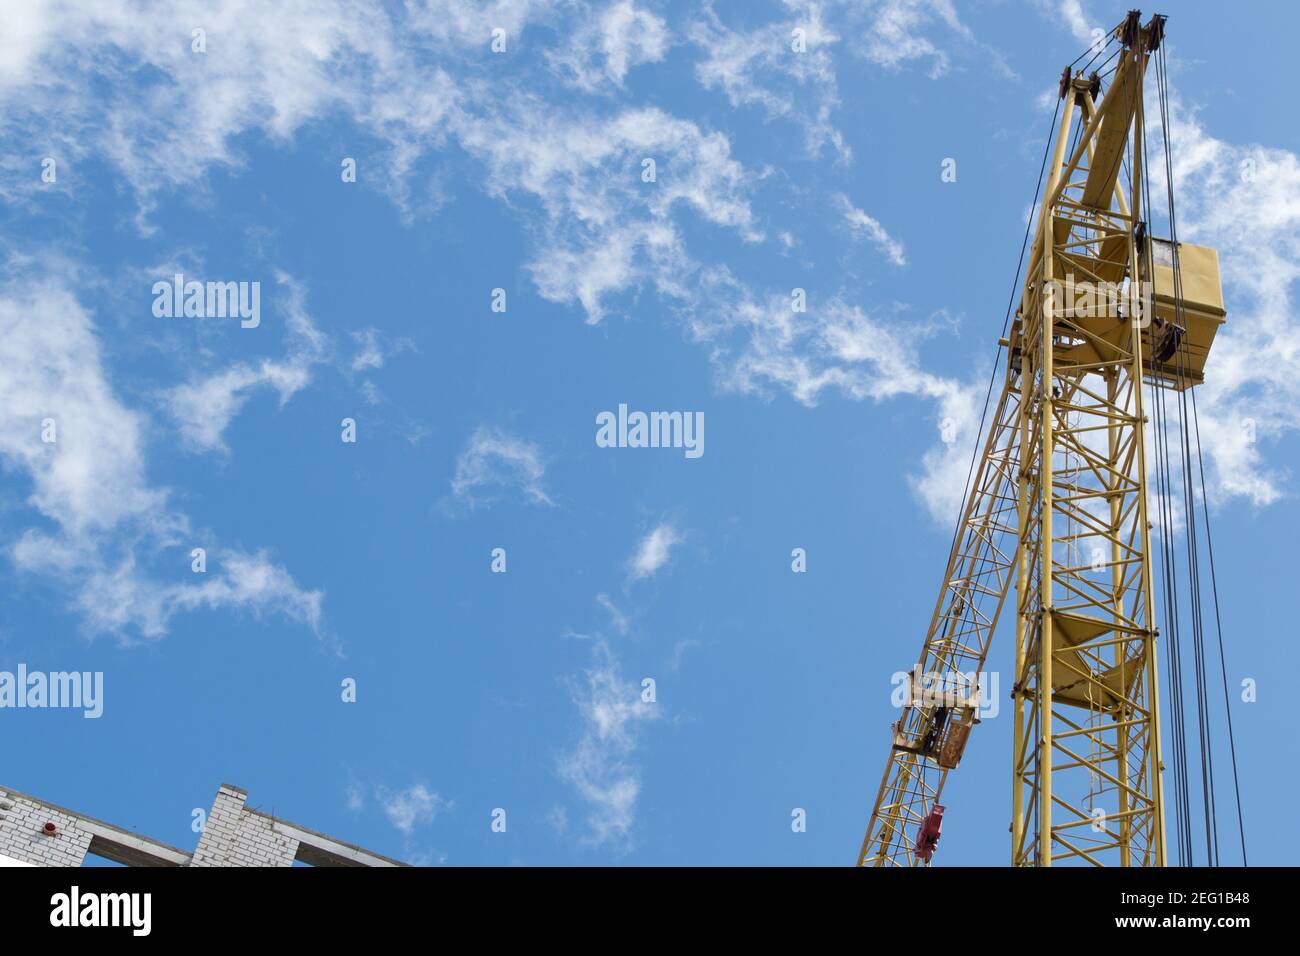 Una gru a torre gialla lavora in un cantiere su i piani superiori di un edificio in mattoni bianchi contro un cielo blu con nuvole fumose e sguazzate Foto Stock